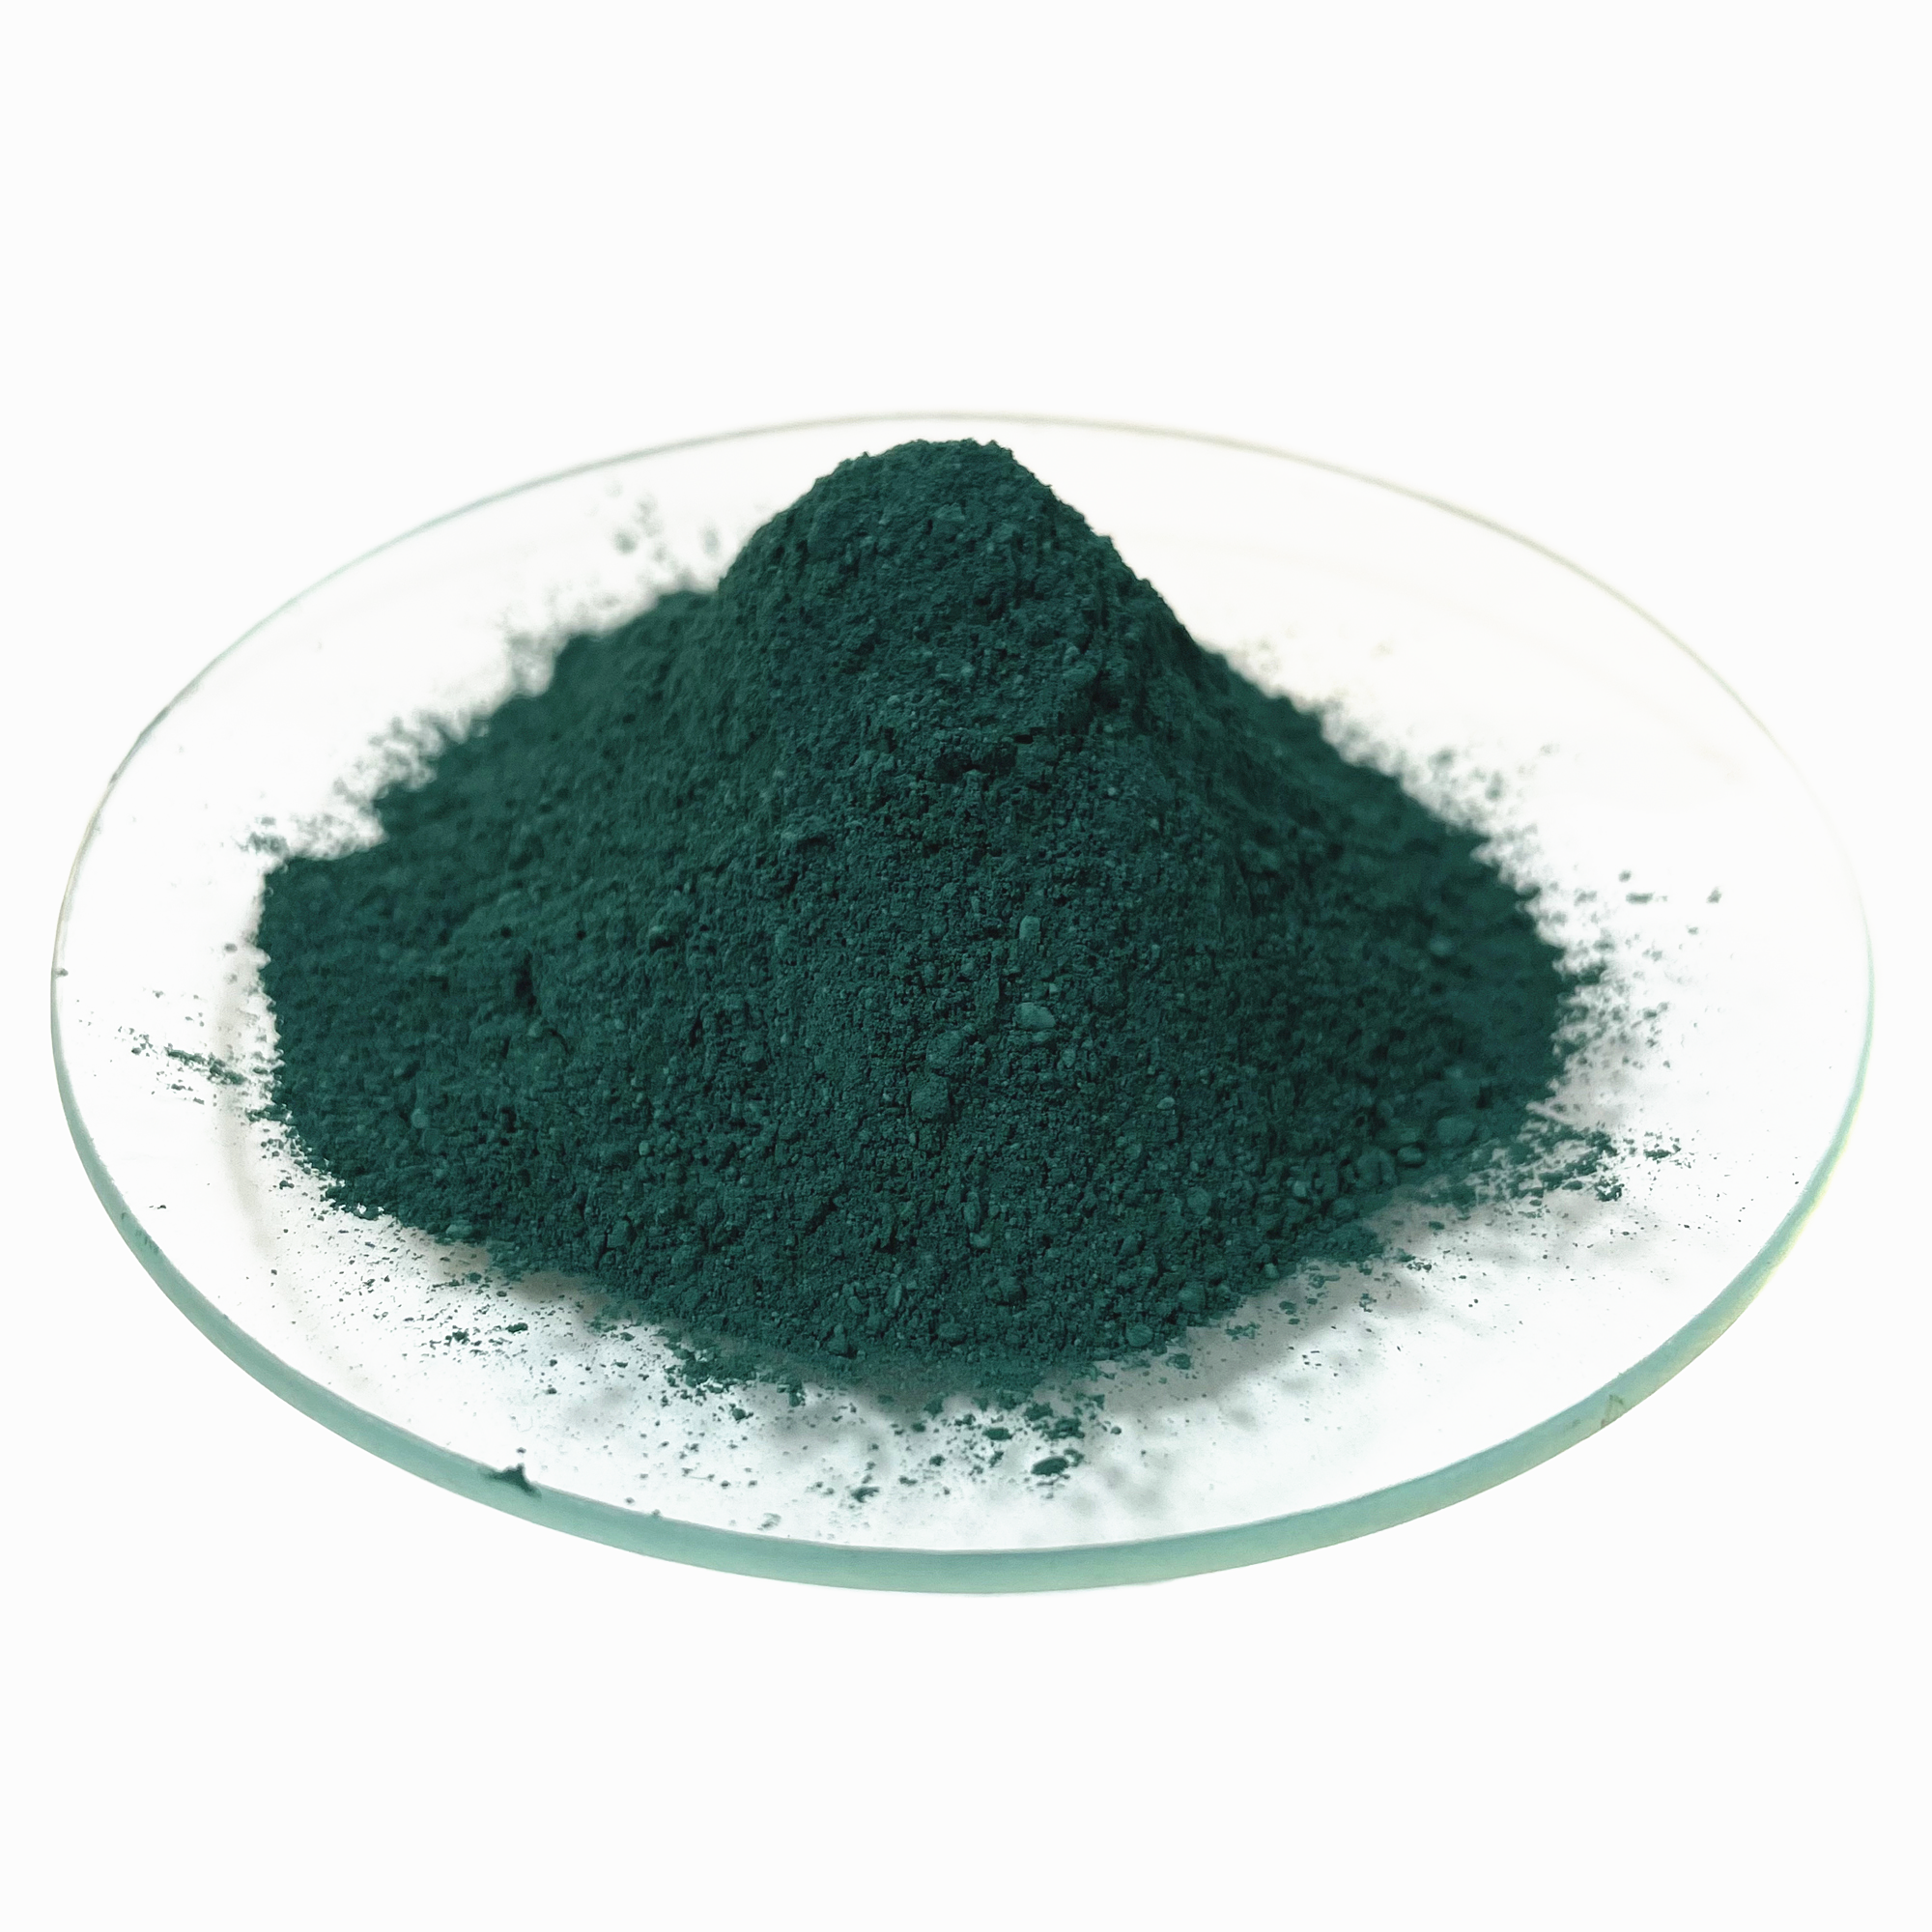 Tlenek żelaza w worku 25 kg Zielony pigment do płytek podłogowych